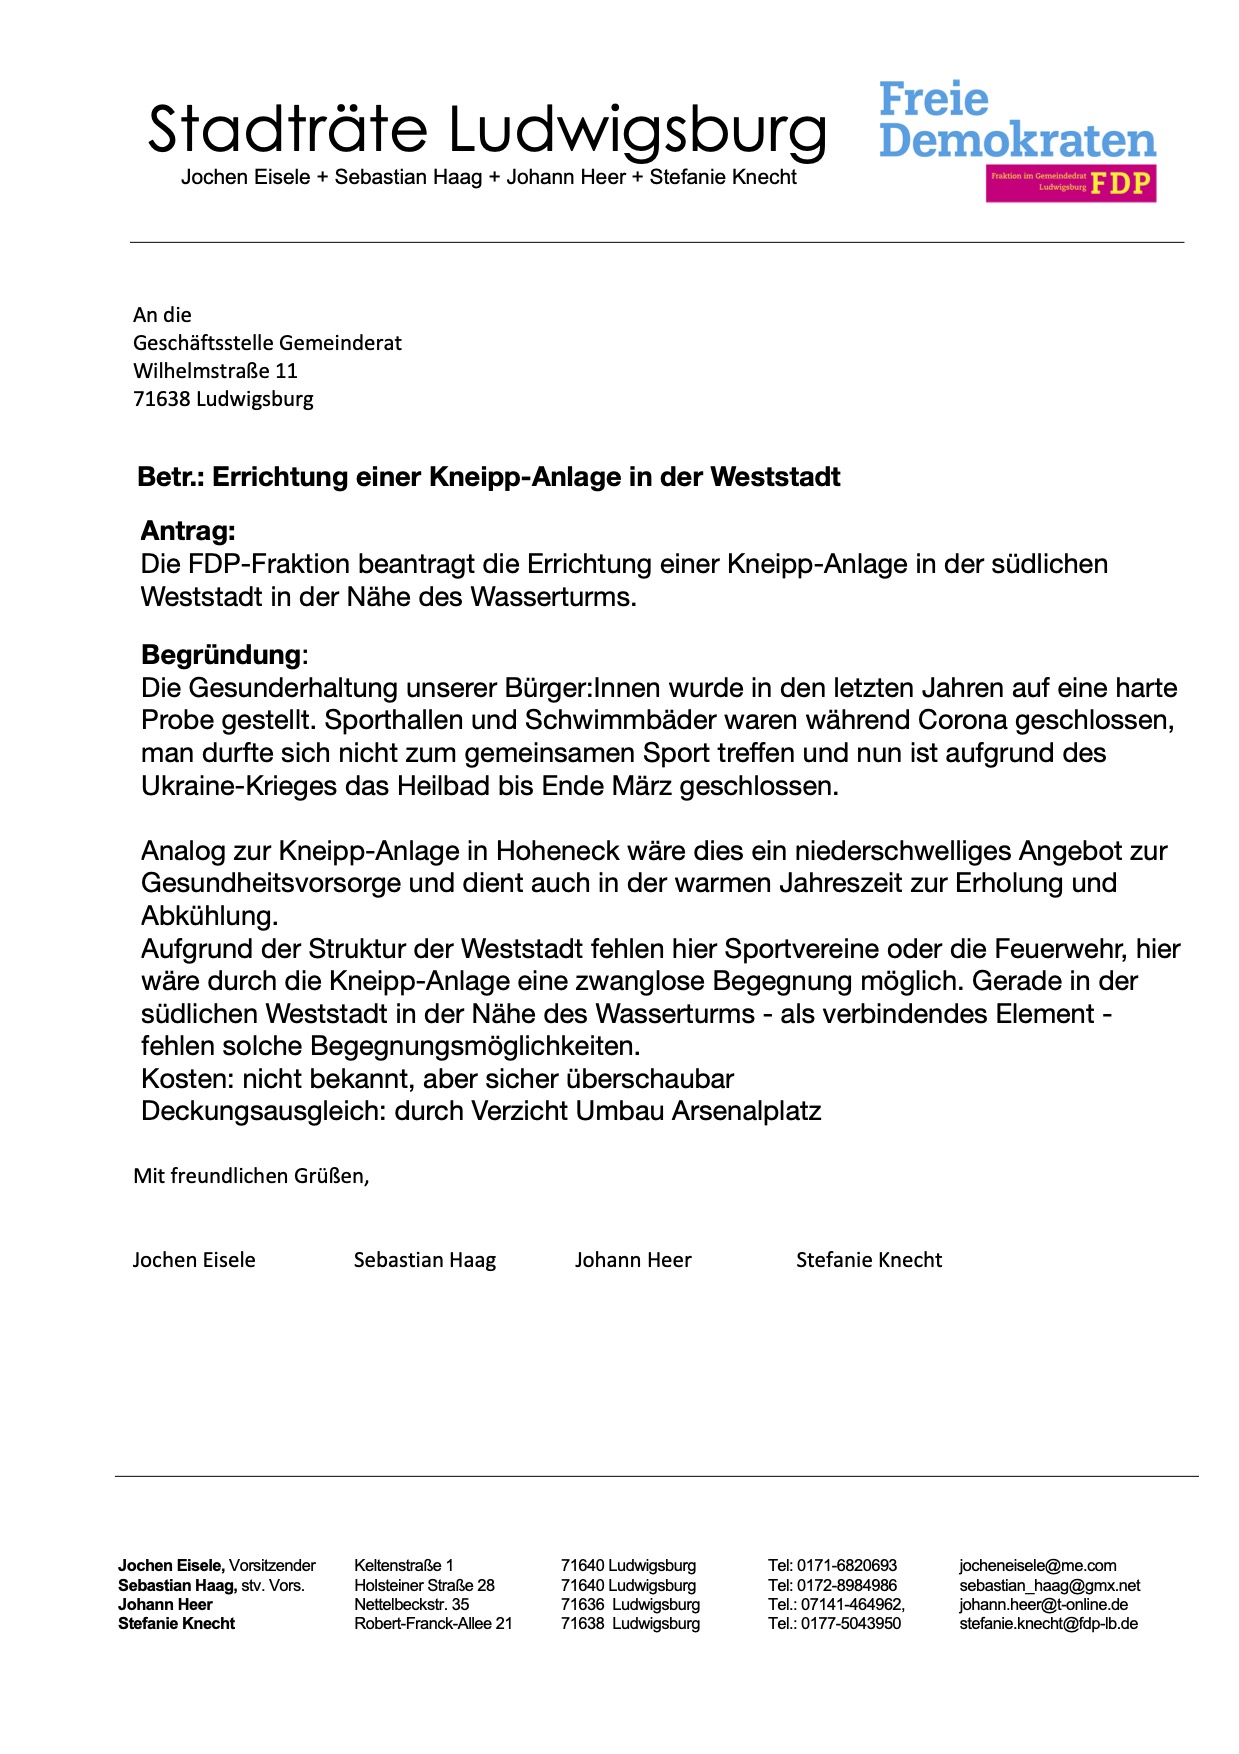 FDP-Antrag: Errichtung einer Kneipp-Anlage in der Weststadt